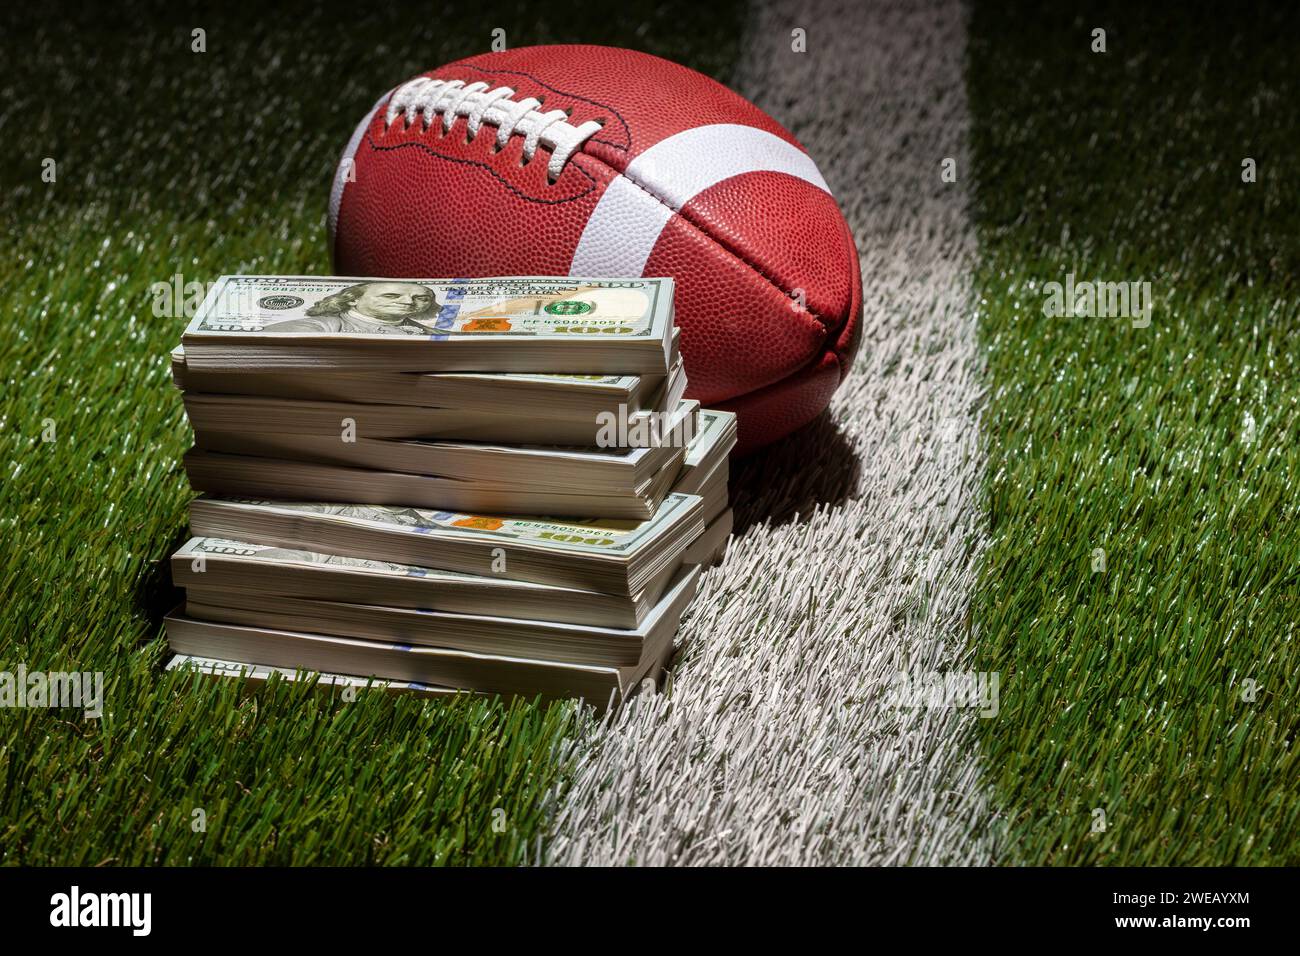 Un ballon de football et une pile de billets de cent dollars sur un terrain d'herbe avec une bande et un fond sombre Banque D'Images